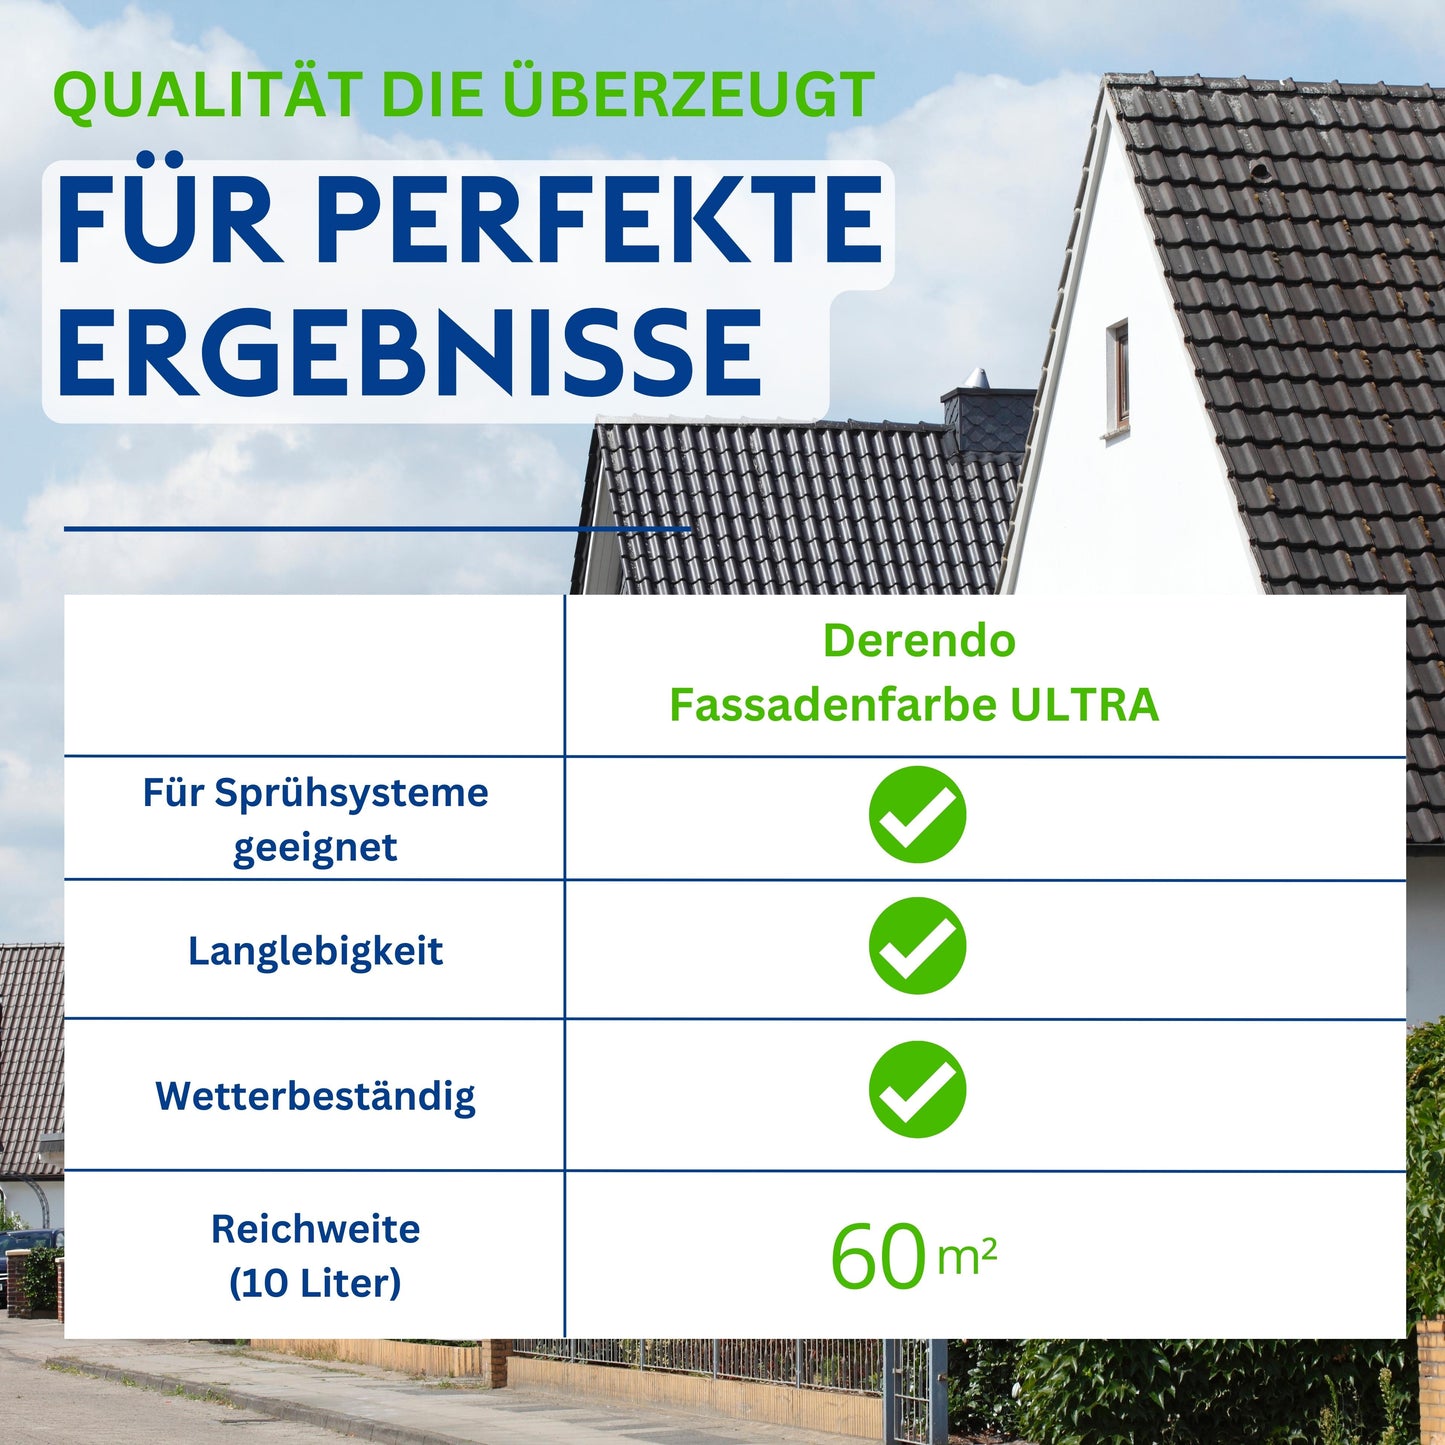 Derendo Fassadenfarbe Altweiss mit ULTRA Wetterschutz und Abperleffekt